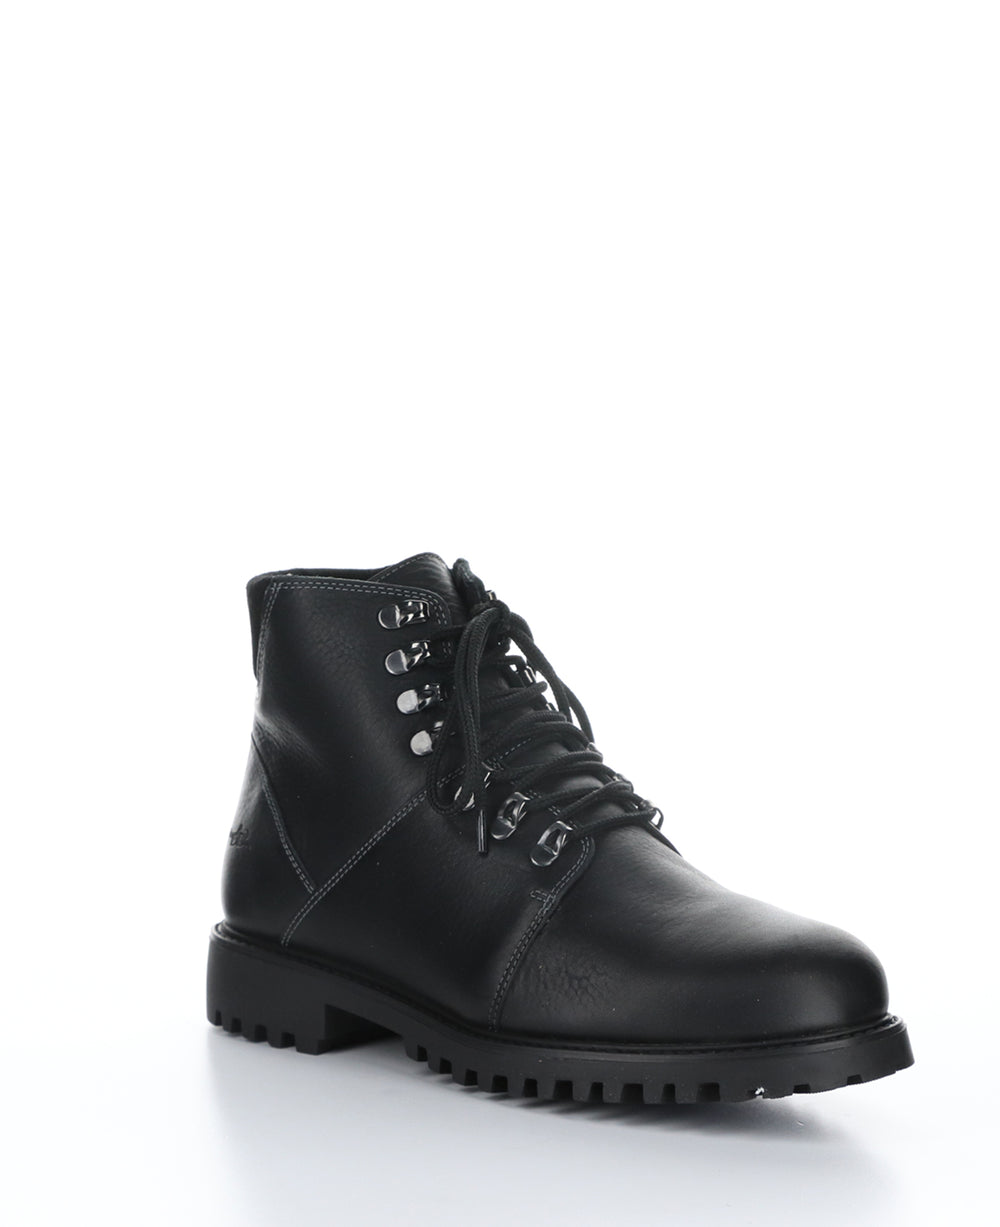 DAWSON Black Zip Up Boots|DAWSON Bottes avec Fermeture Zippée in Noir